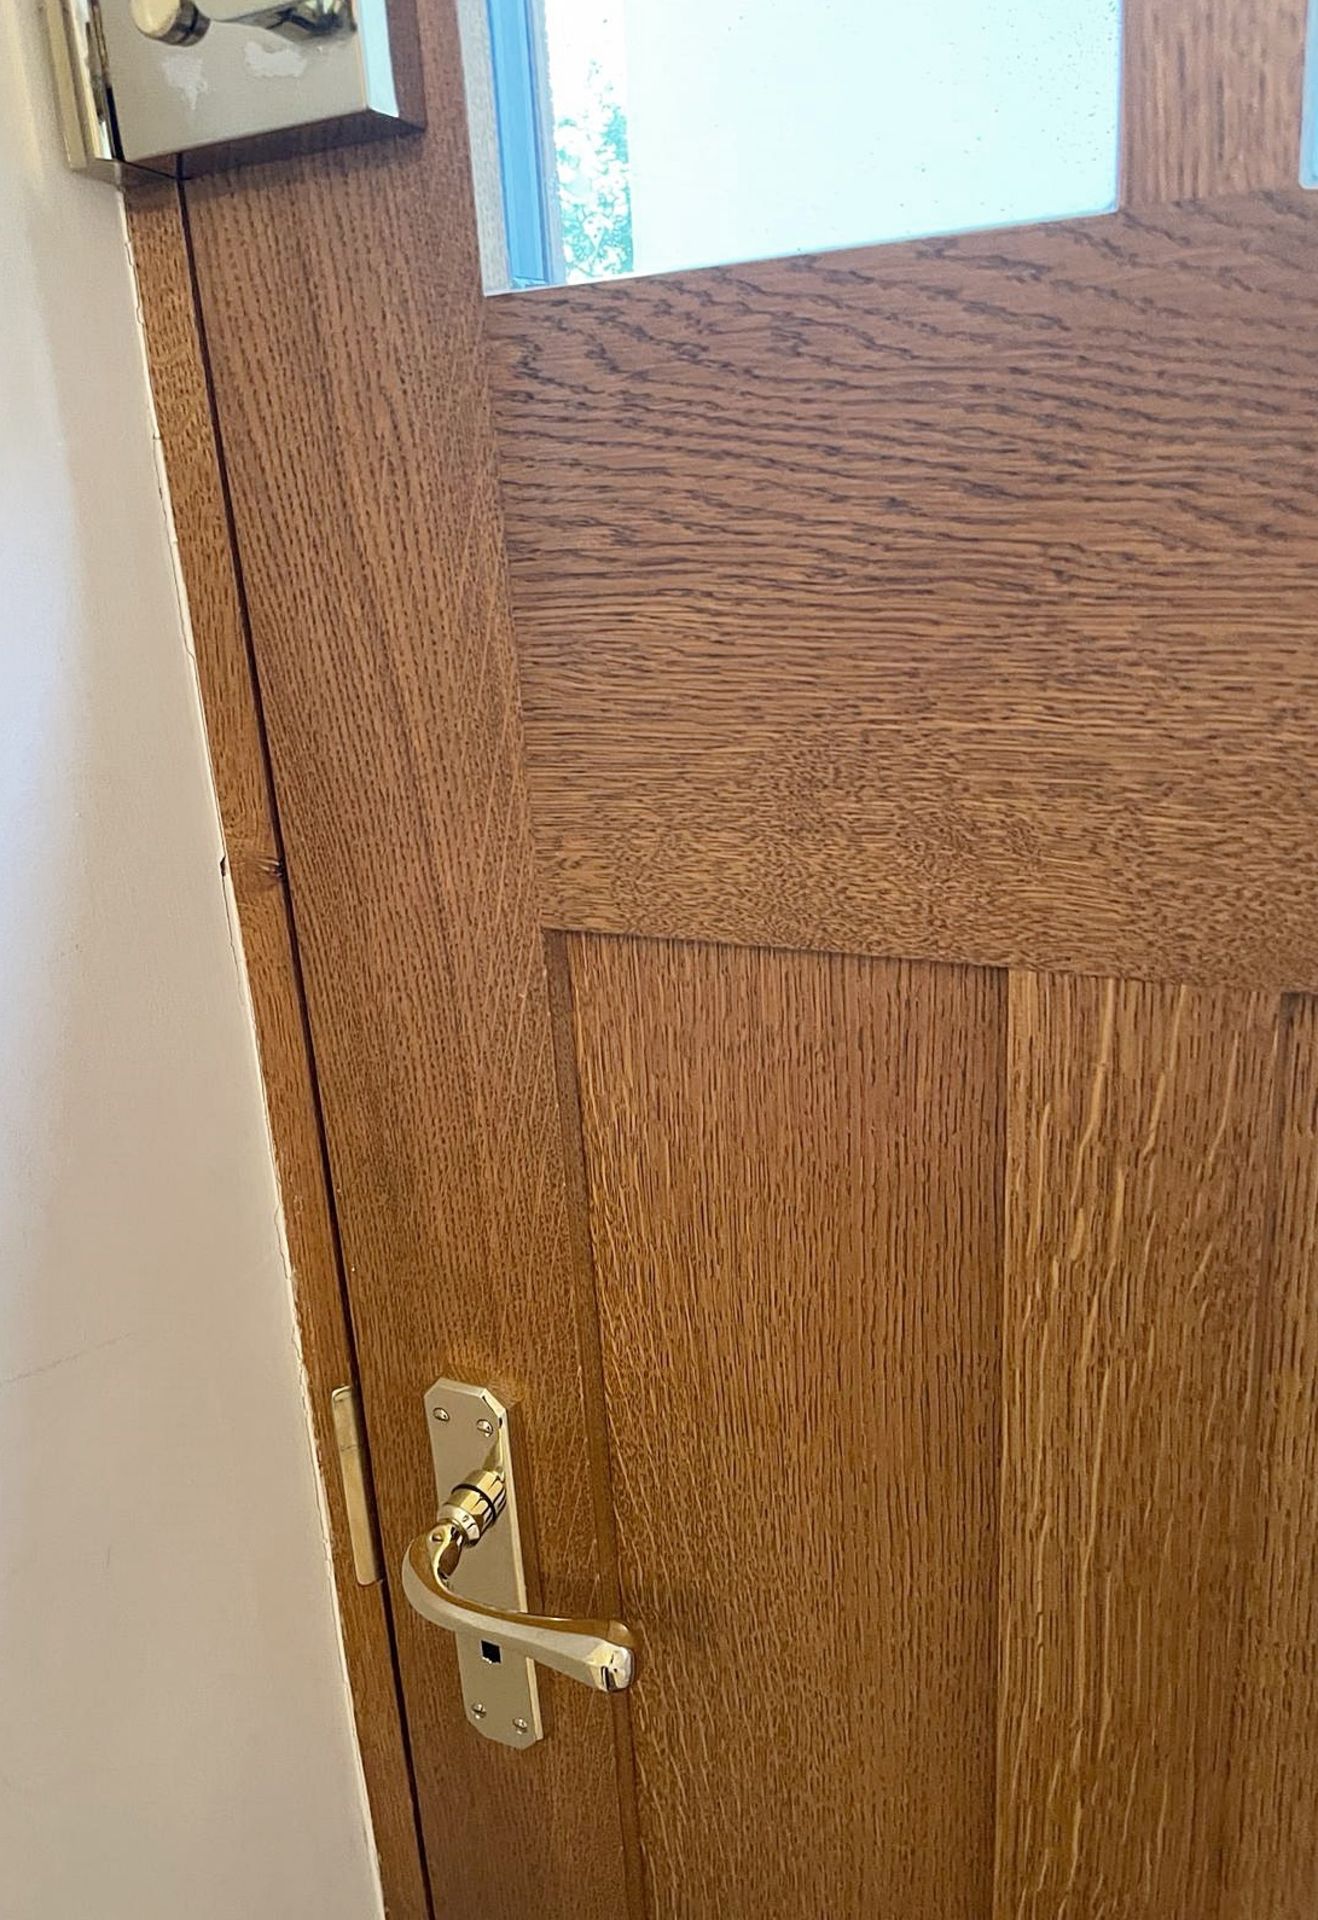 1 x Solid Wood Lockable Glazed External Side Door - Includes Hinges & Handles - Ref: PAN141 - NO VAT - Image 8 of 17